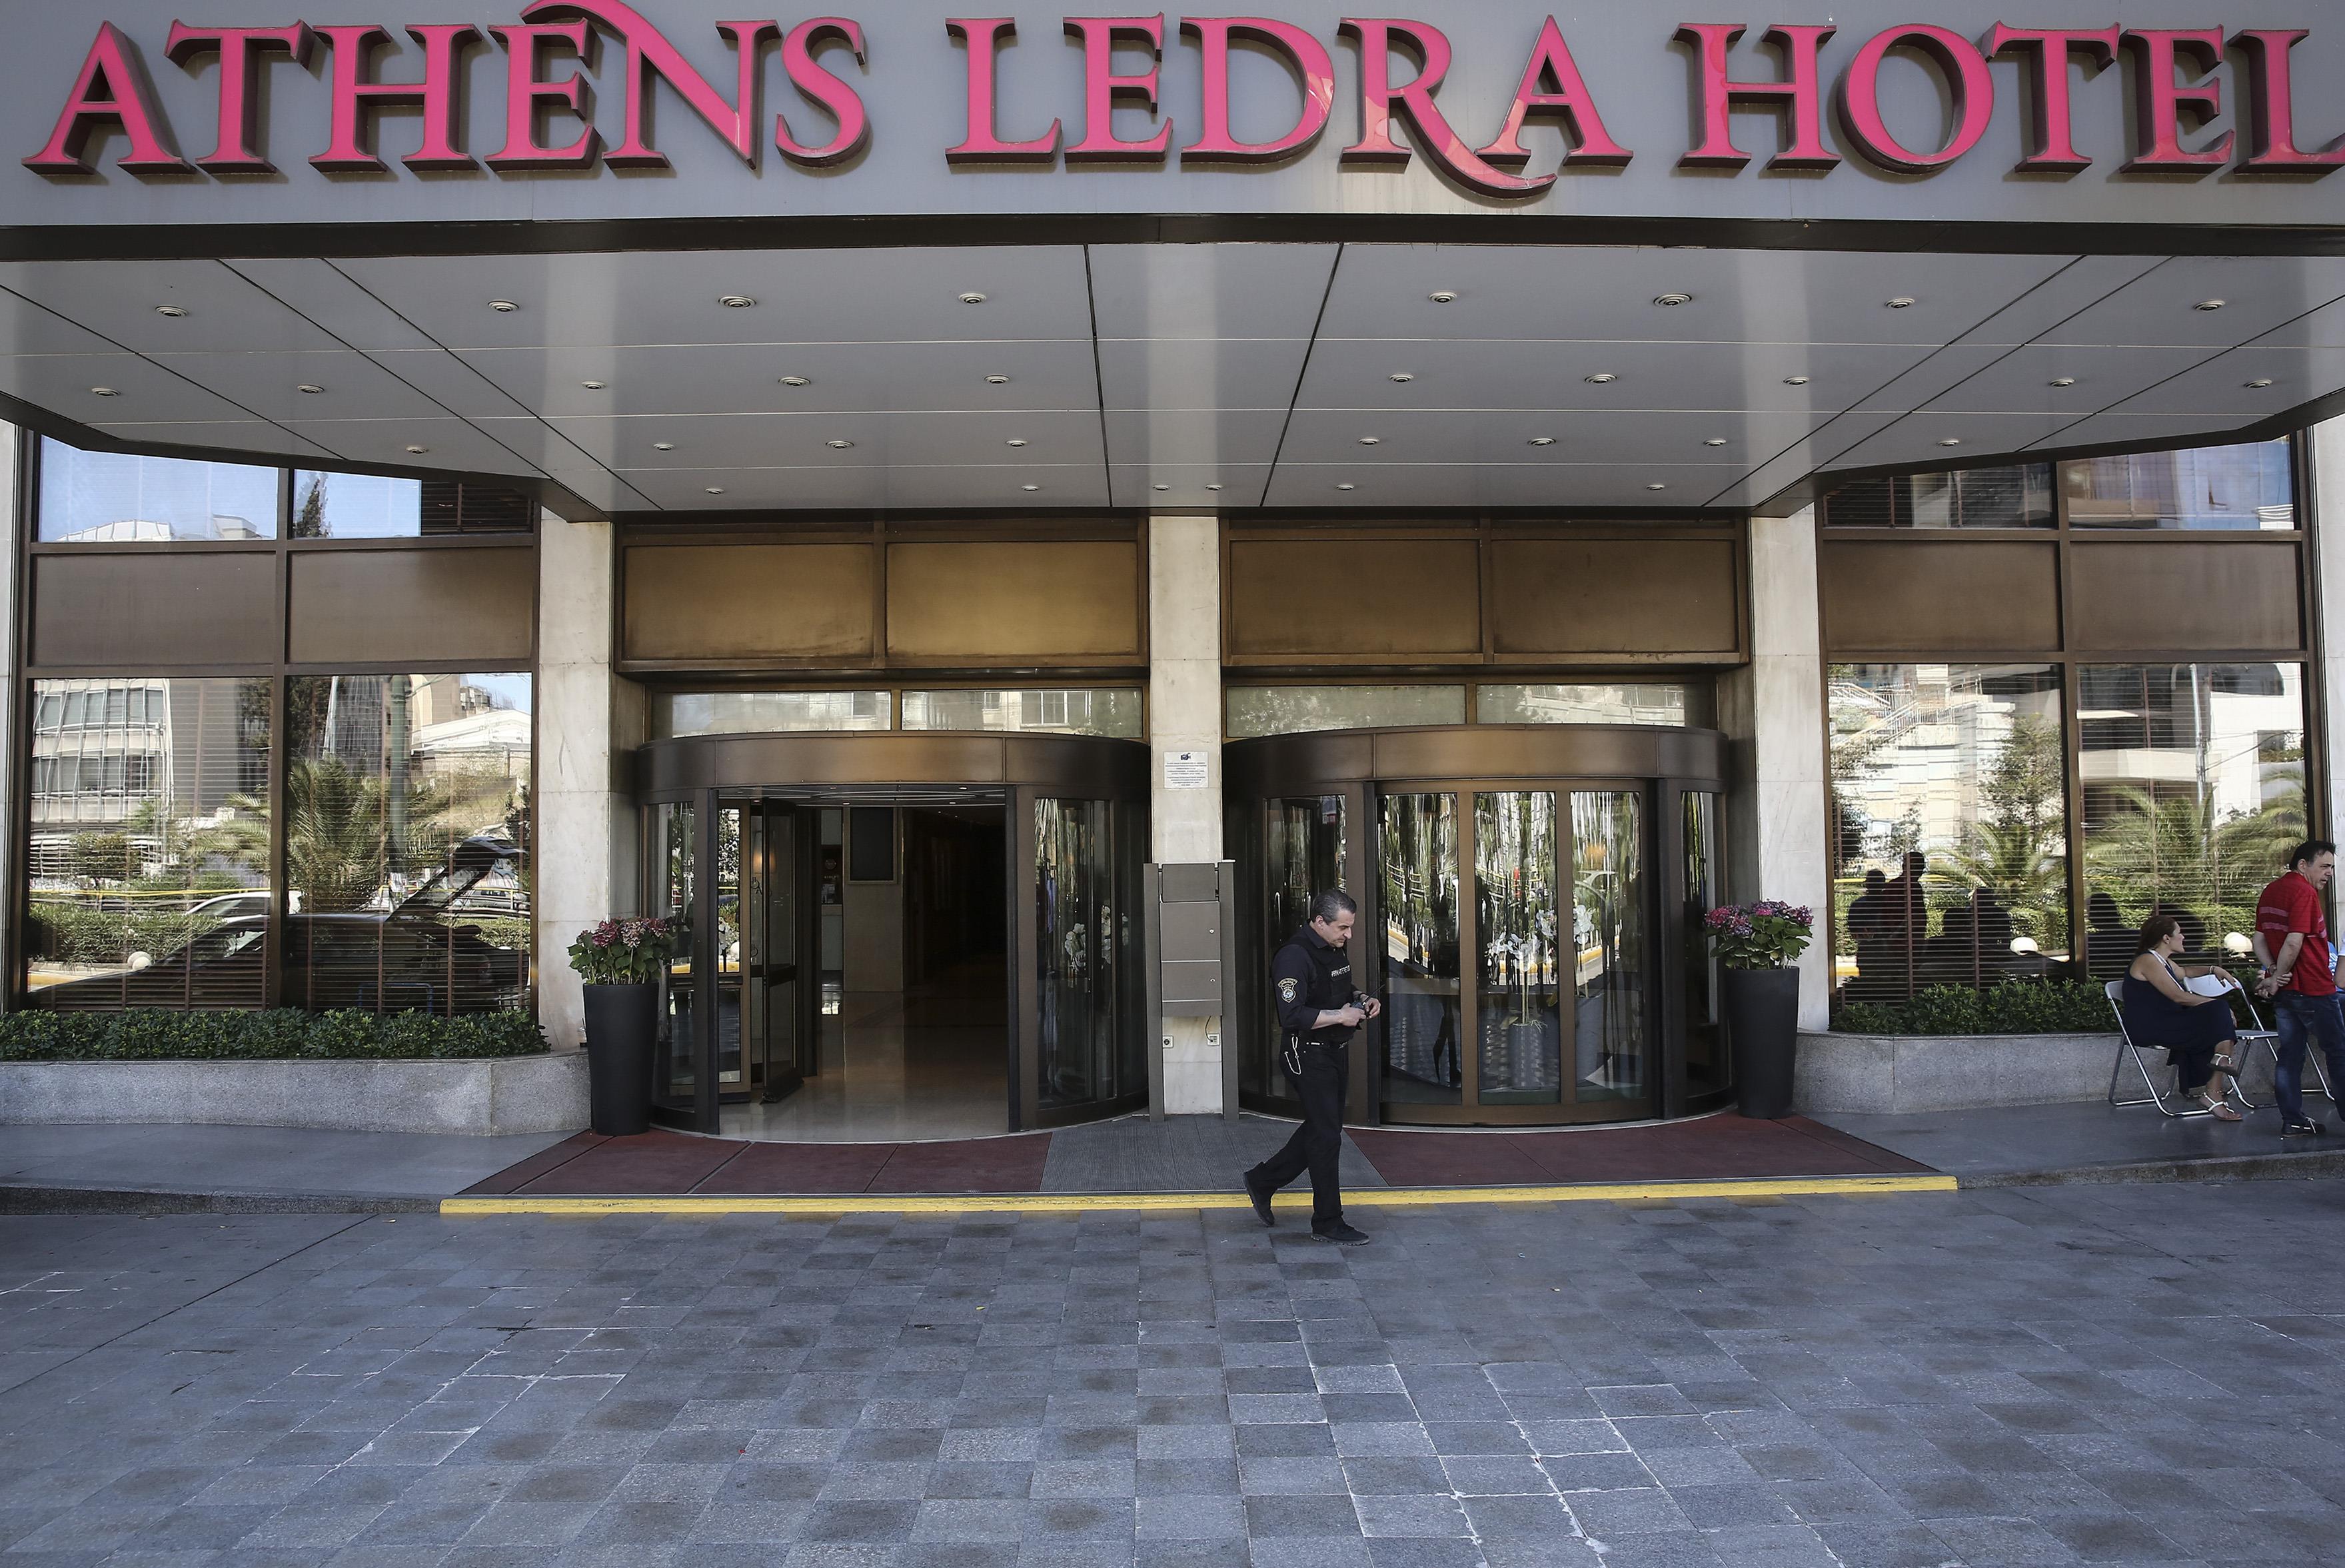 Αποχωρούν από το Athens Ledra οι εργαζόμενοι του ξενοδοχείου